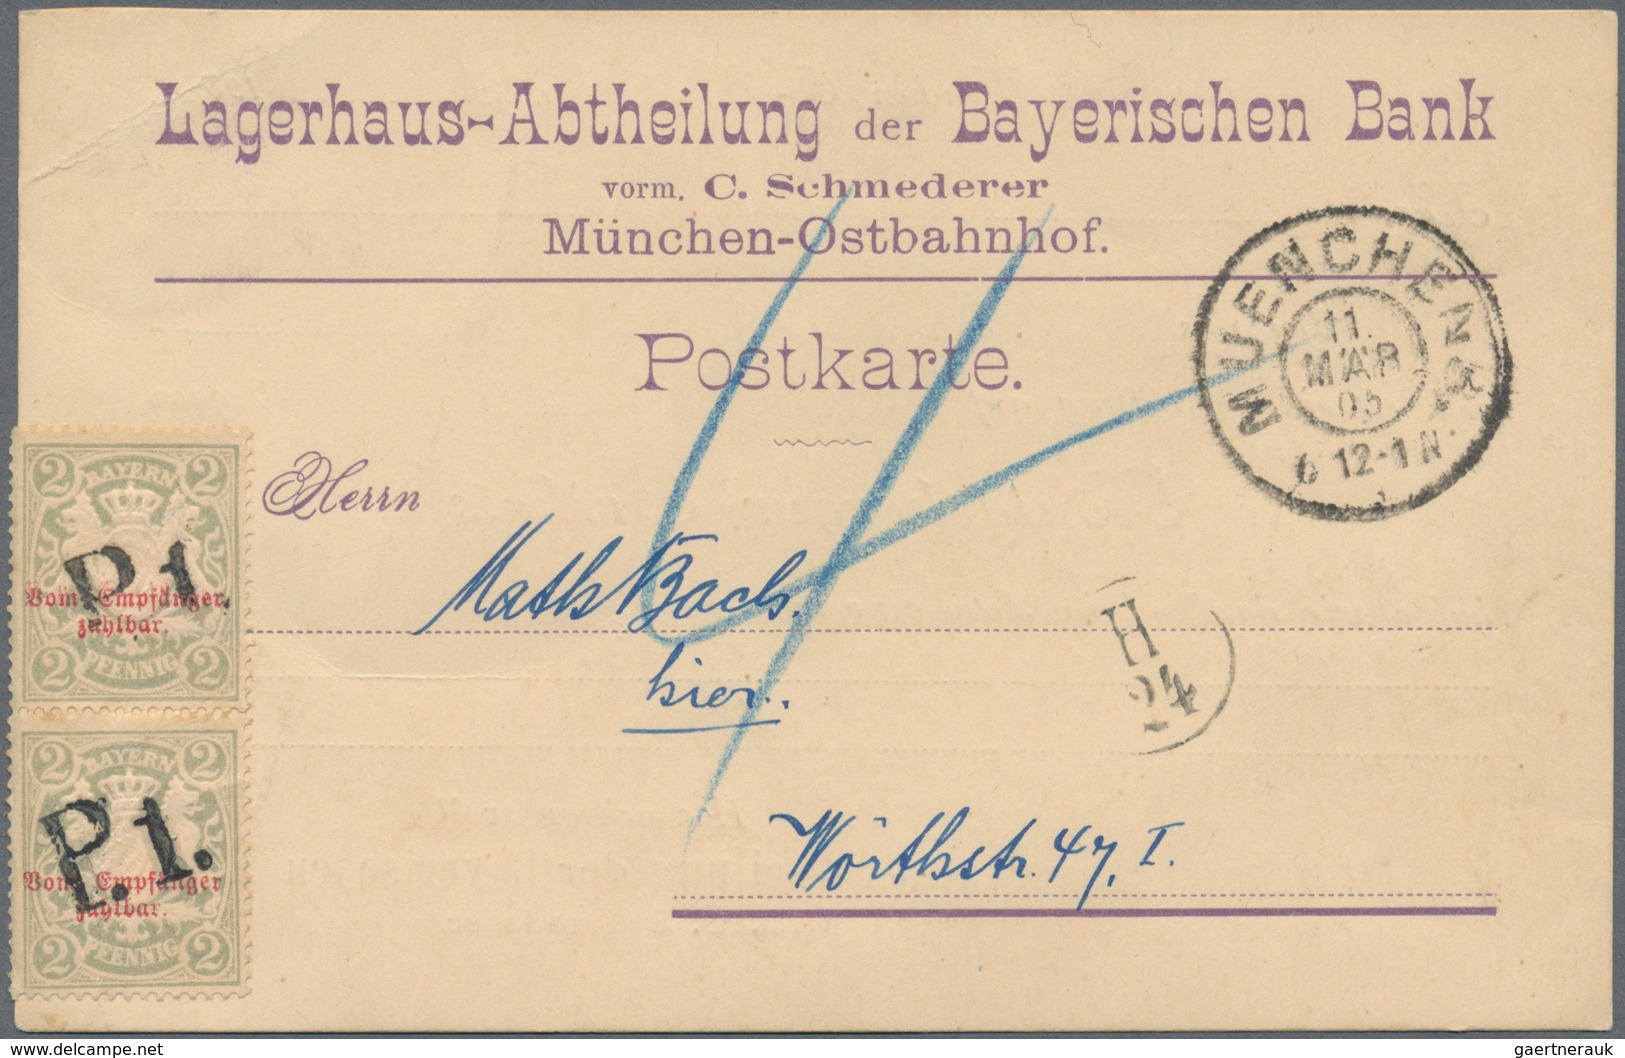 Bayern - Marken und Briefe: 1876-1920 inkl. Porto und Dienst, umfangreiches Studienmaterial mit taus